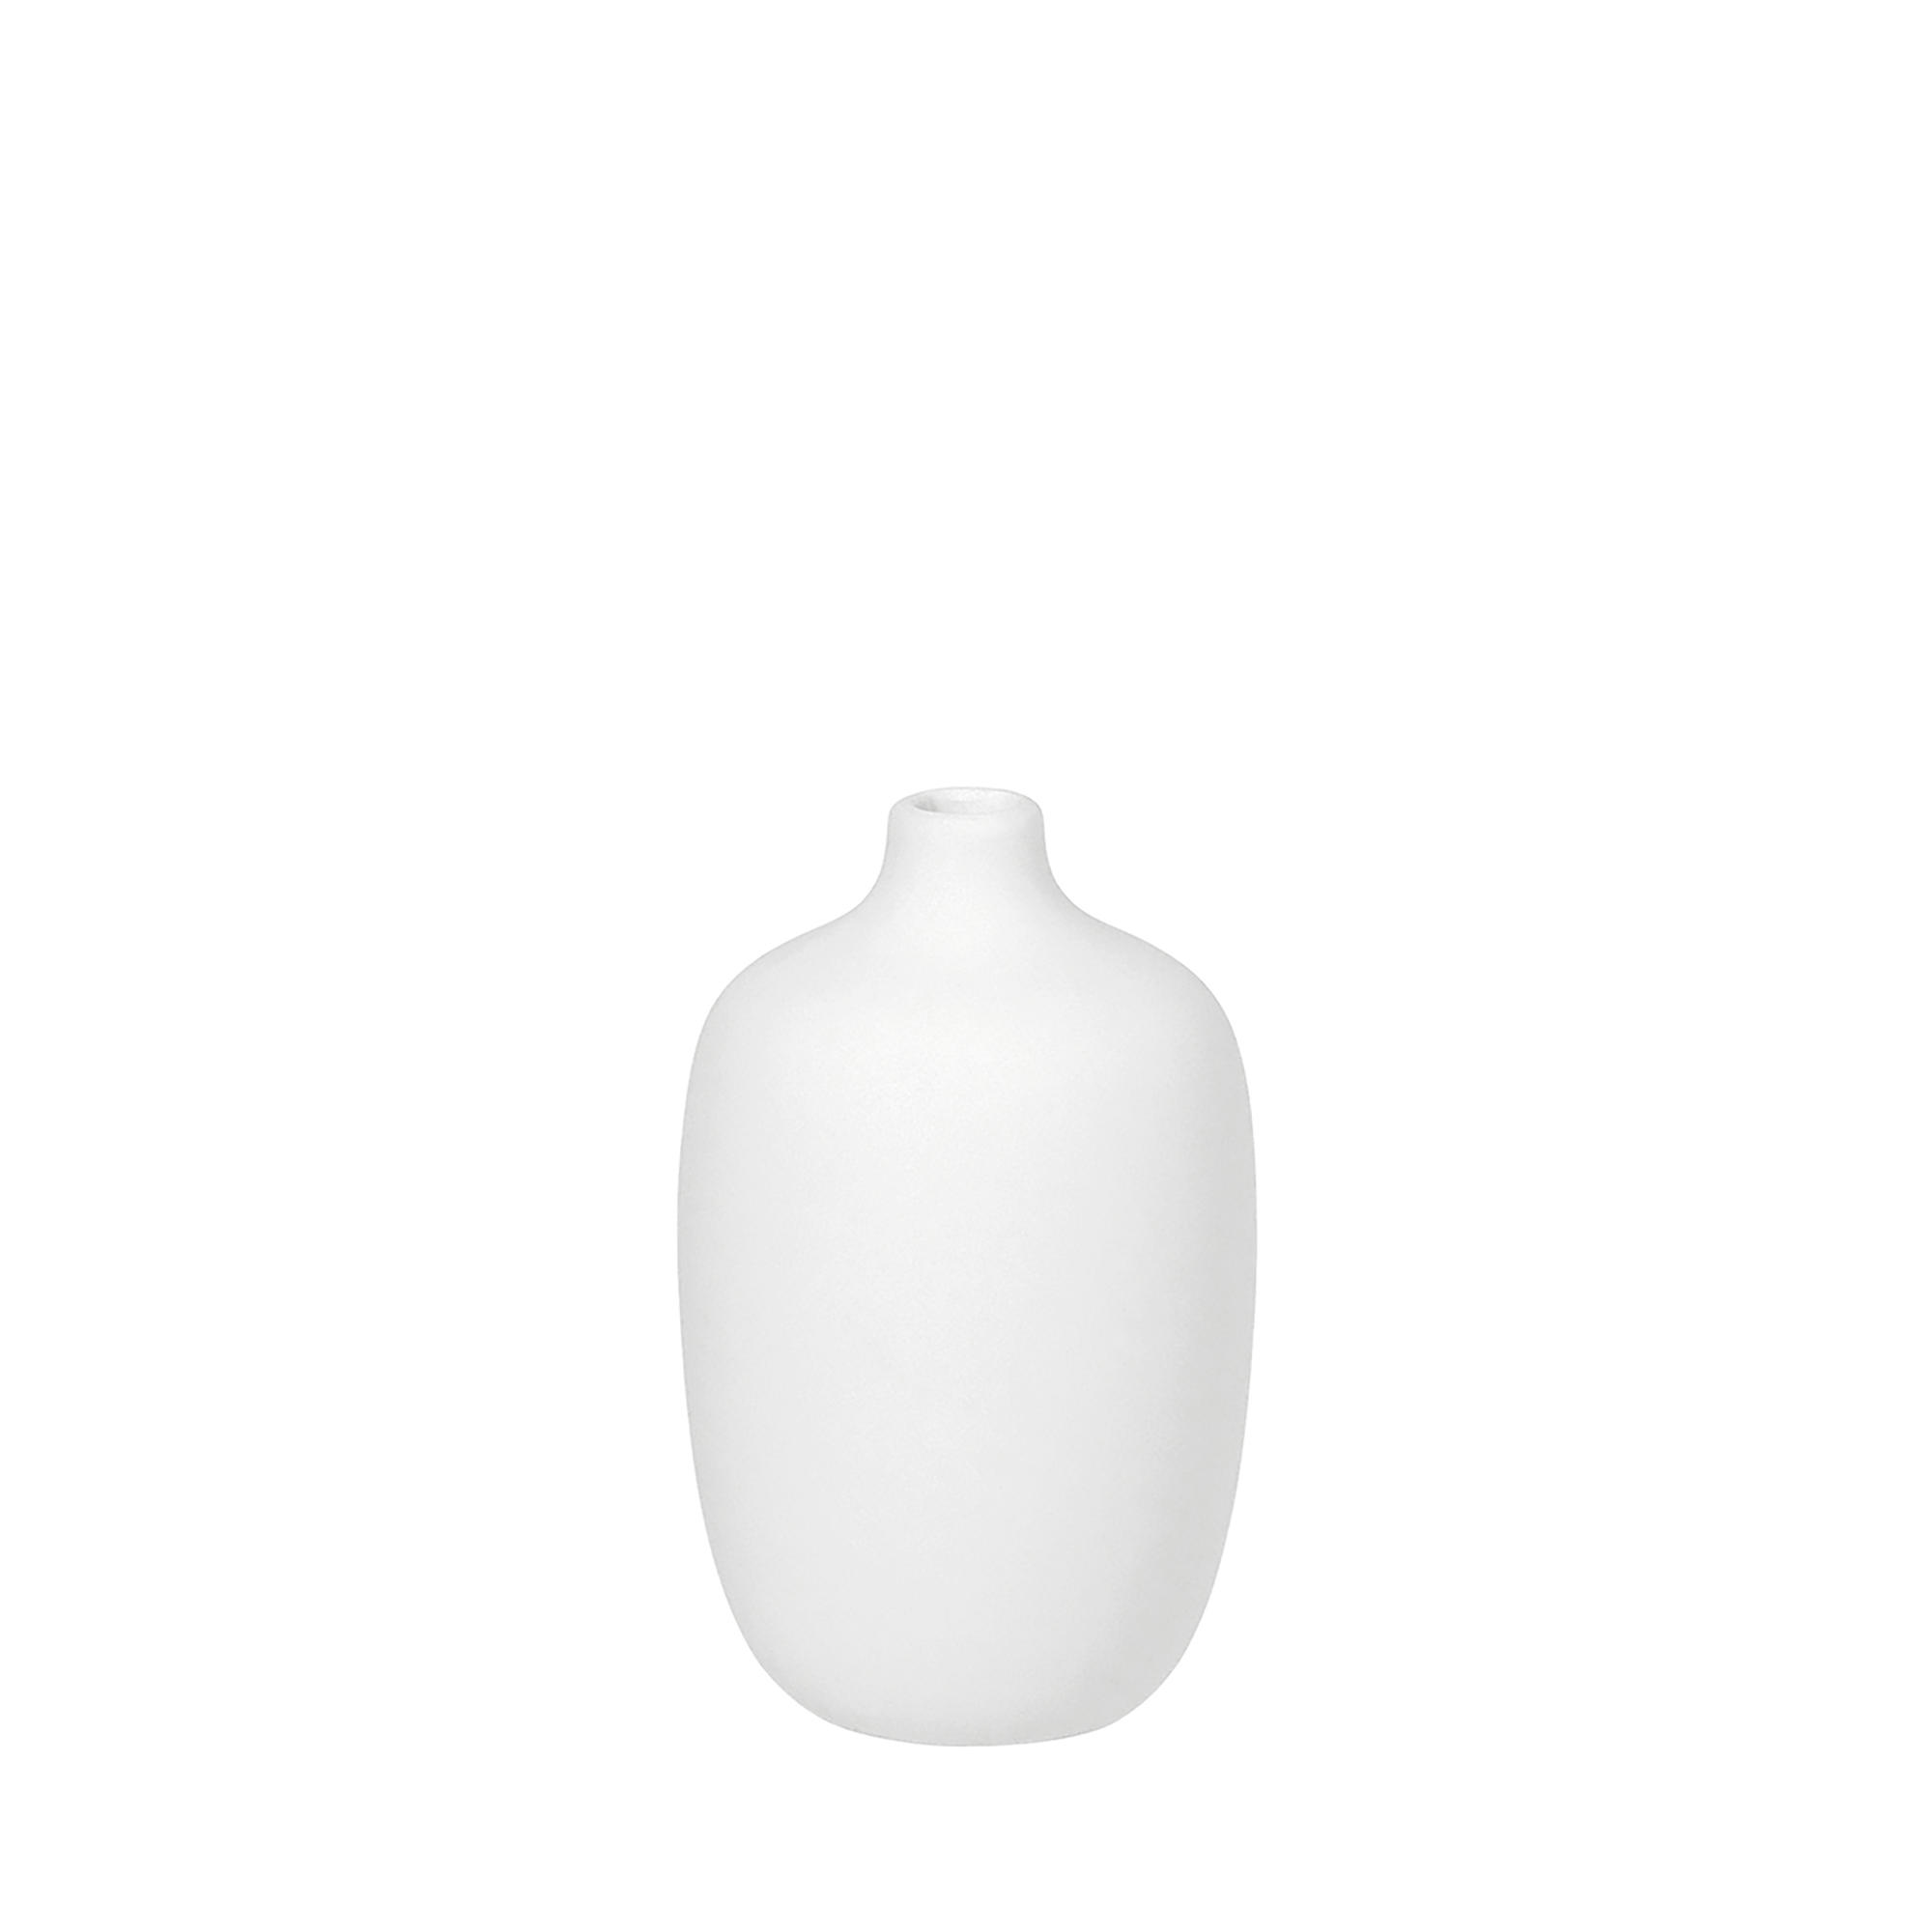 VASE CEOLA 13,0 cm  - Weiß, Design, Keramik (8,0/13,0cm) - Blomus